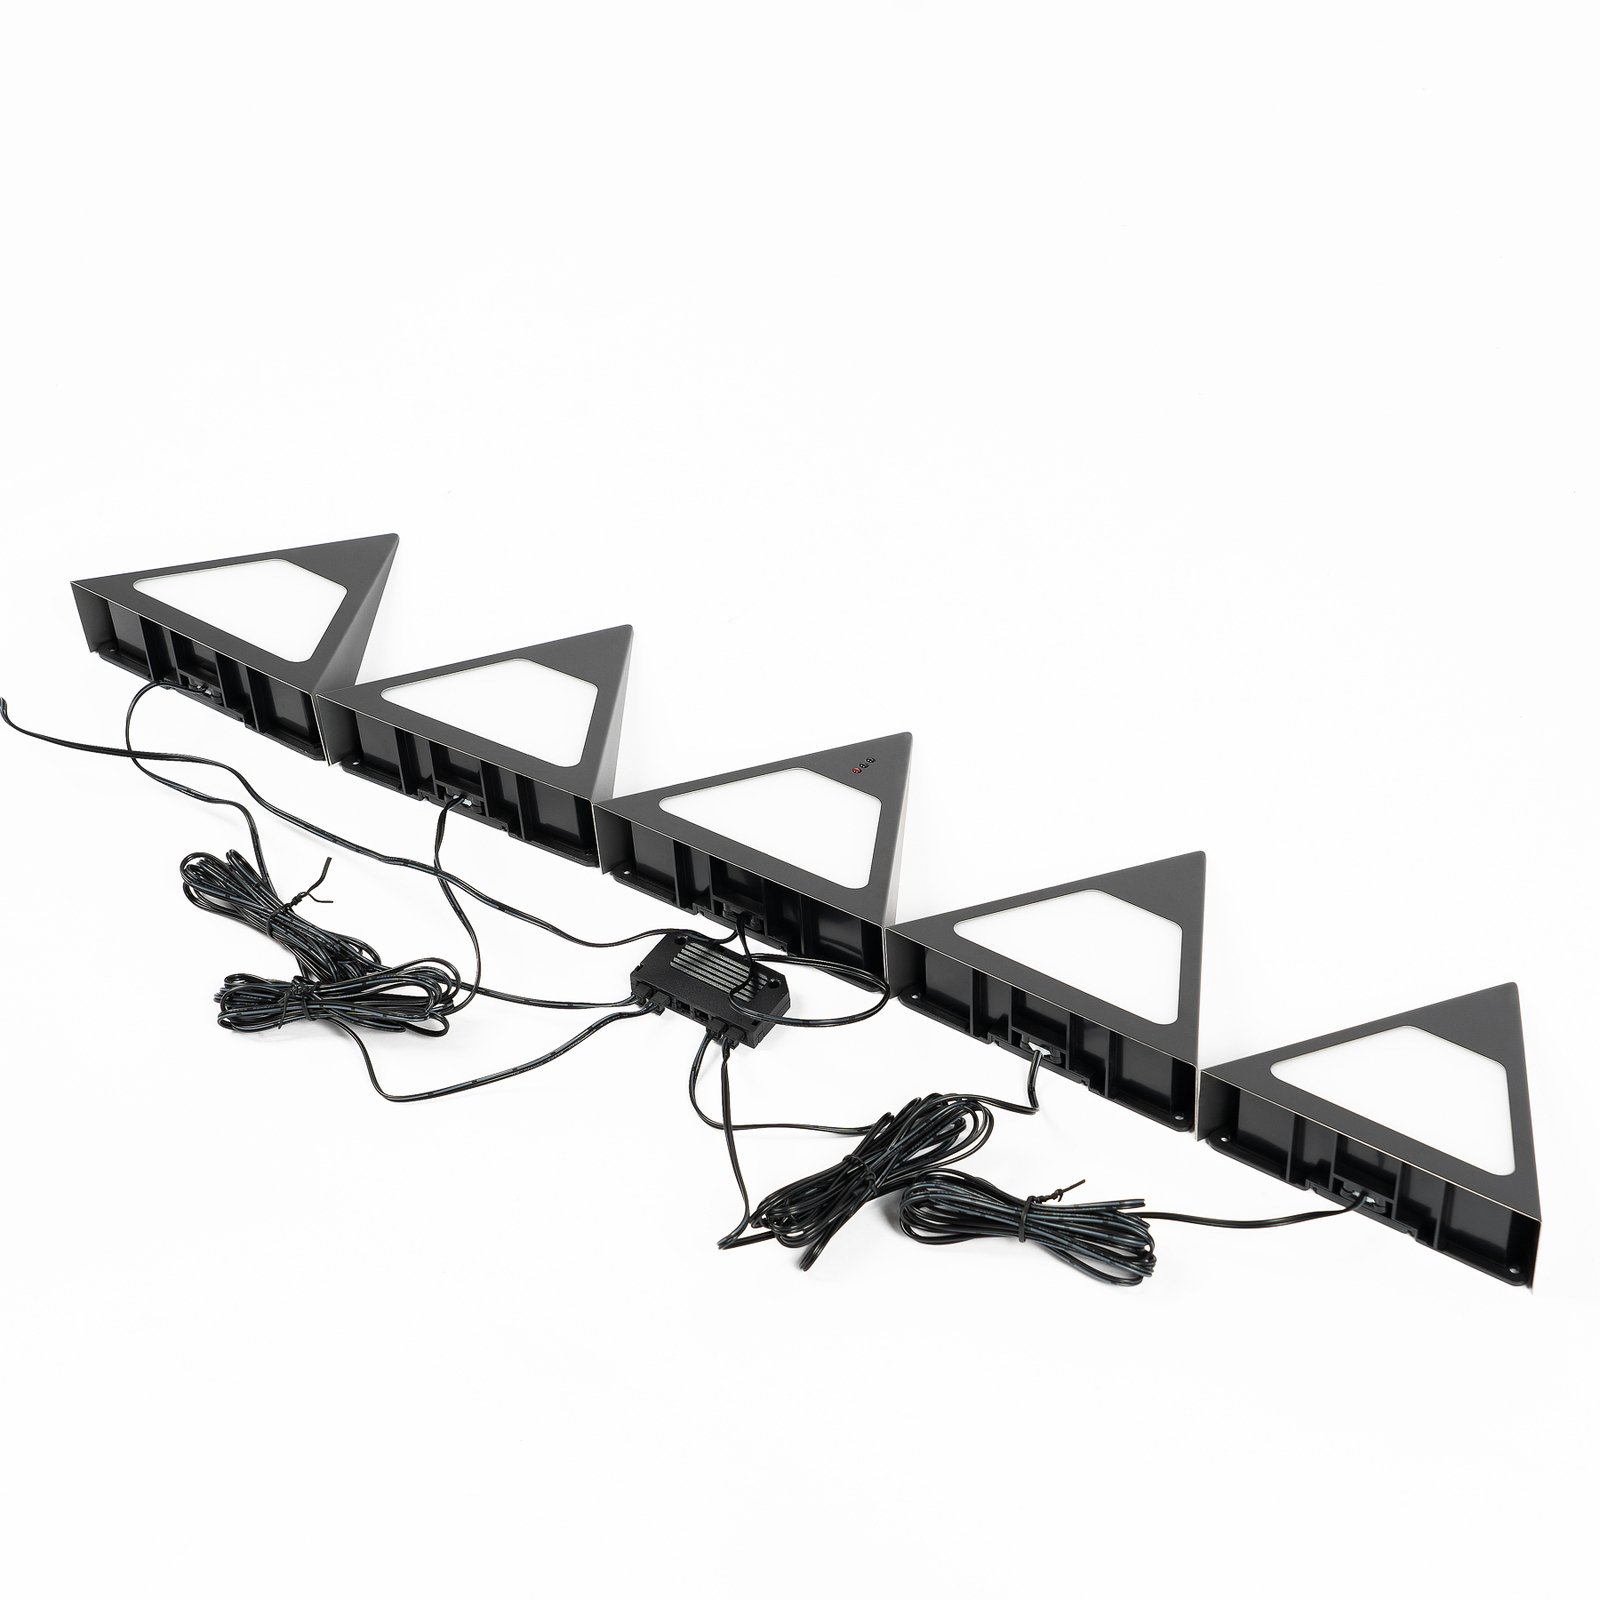 Prios Odia LED underskapslampe, svart, sett med 5 stk